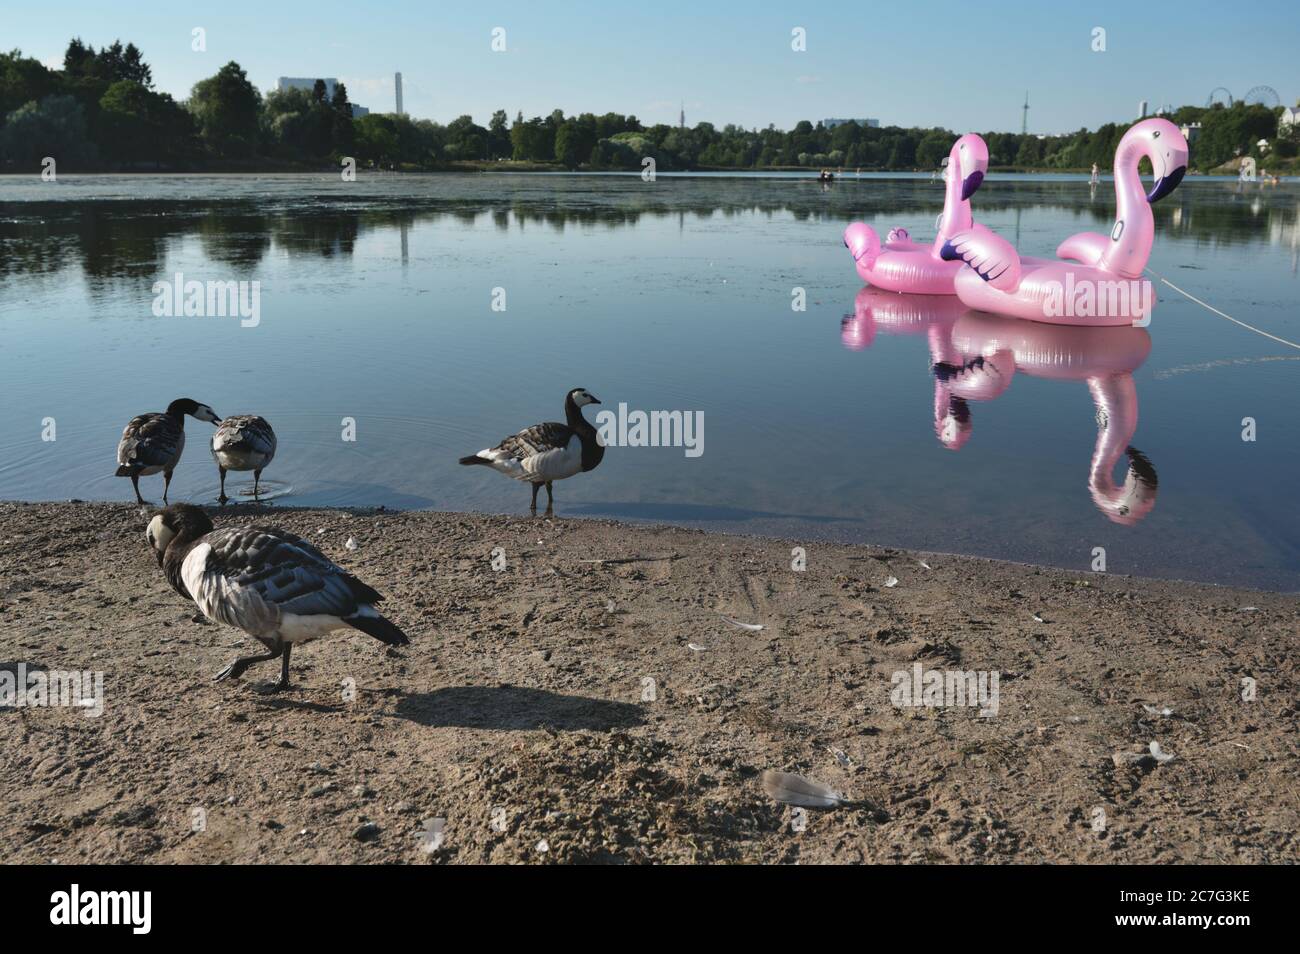 Bernaches de Barnacle contre le flamant rose gonflable jouet sur le lac dans le centre d'Helsinki, Finlande Banque D'Images